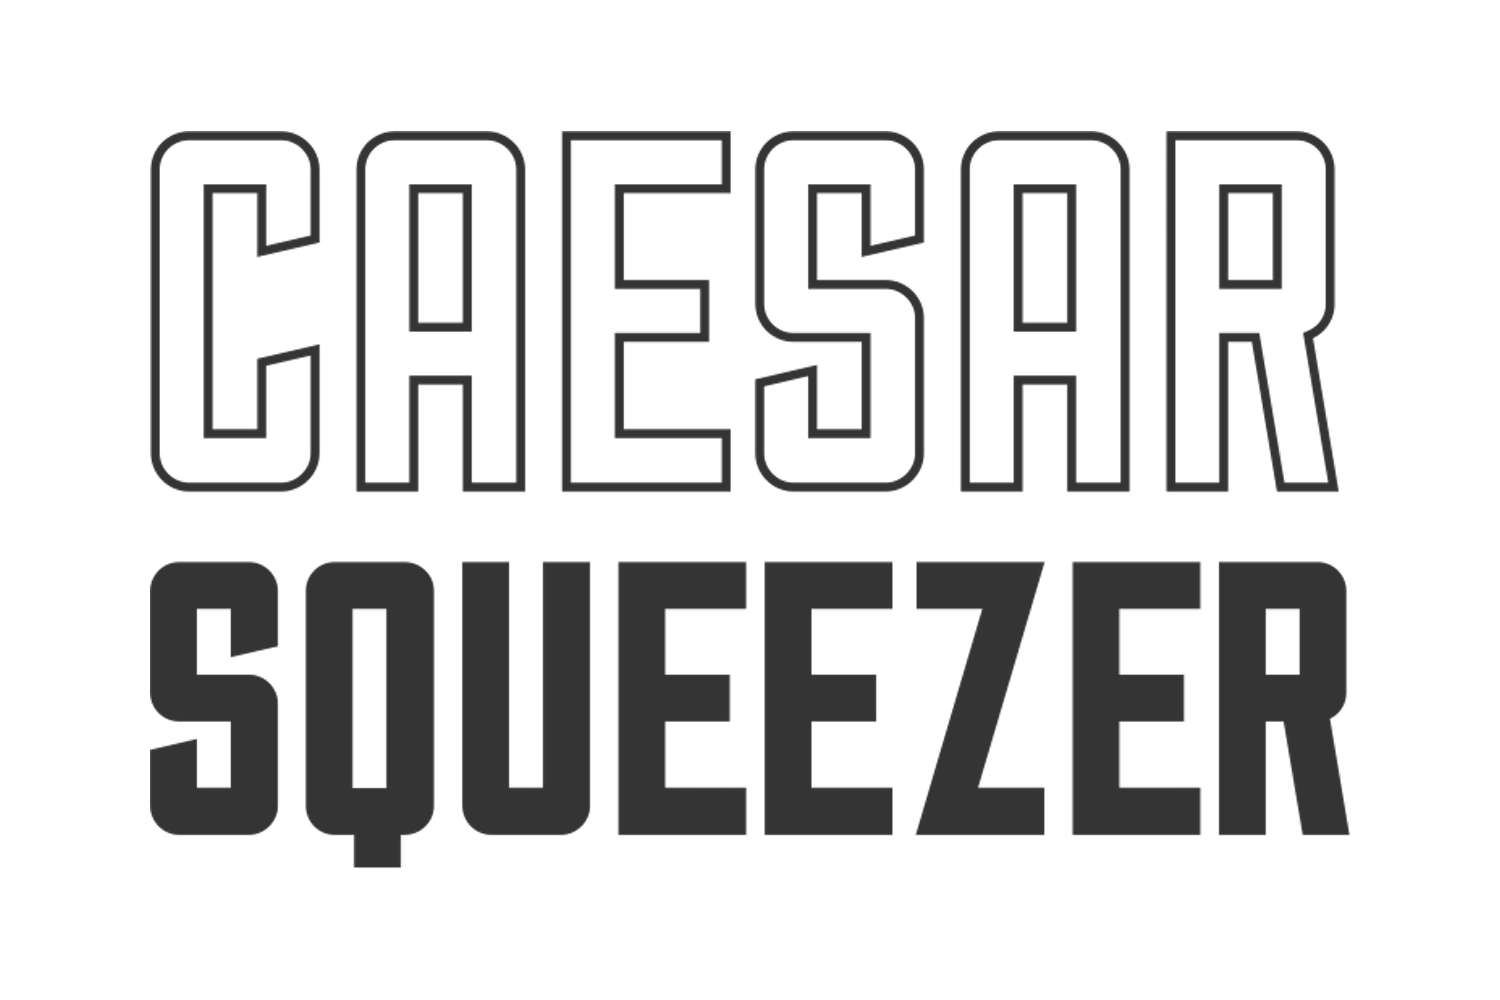 Squeezer Logo - Caesar Squeezers